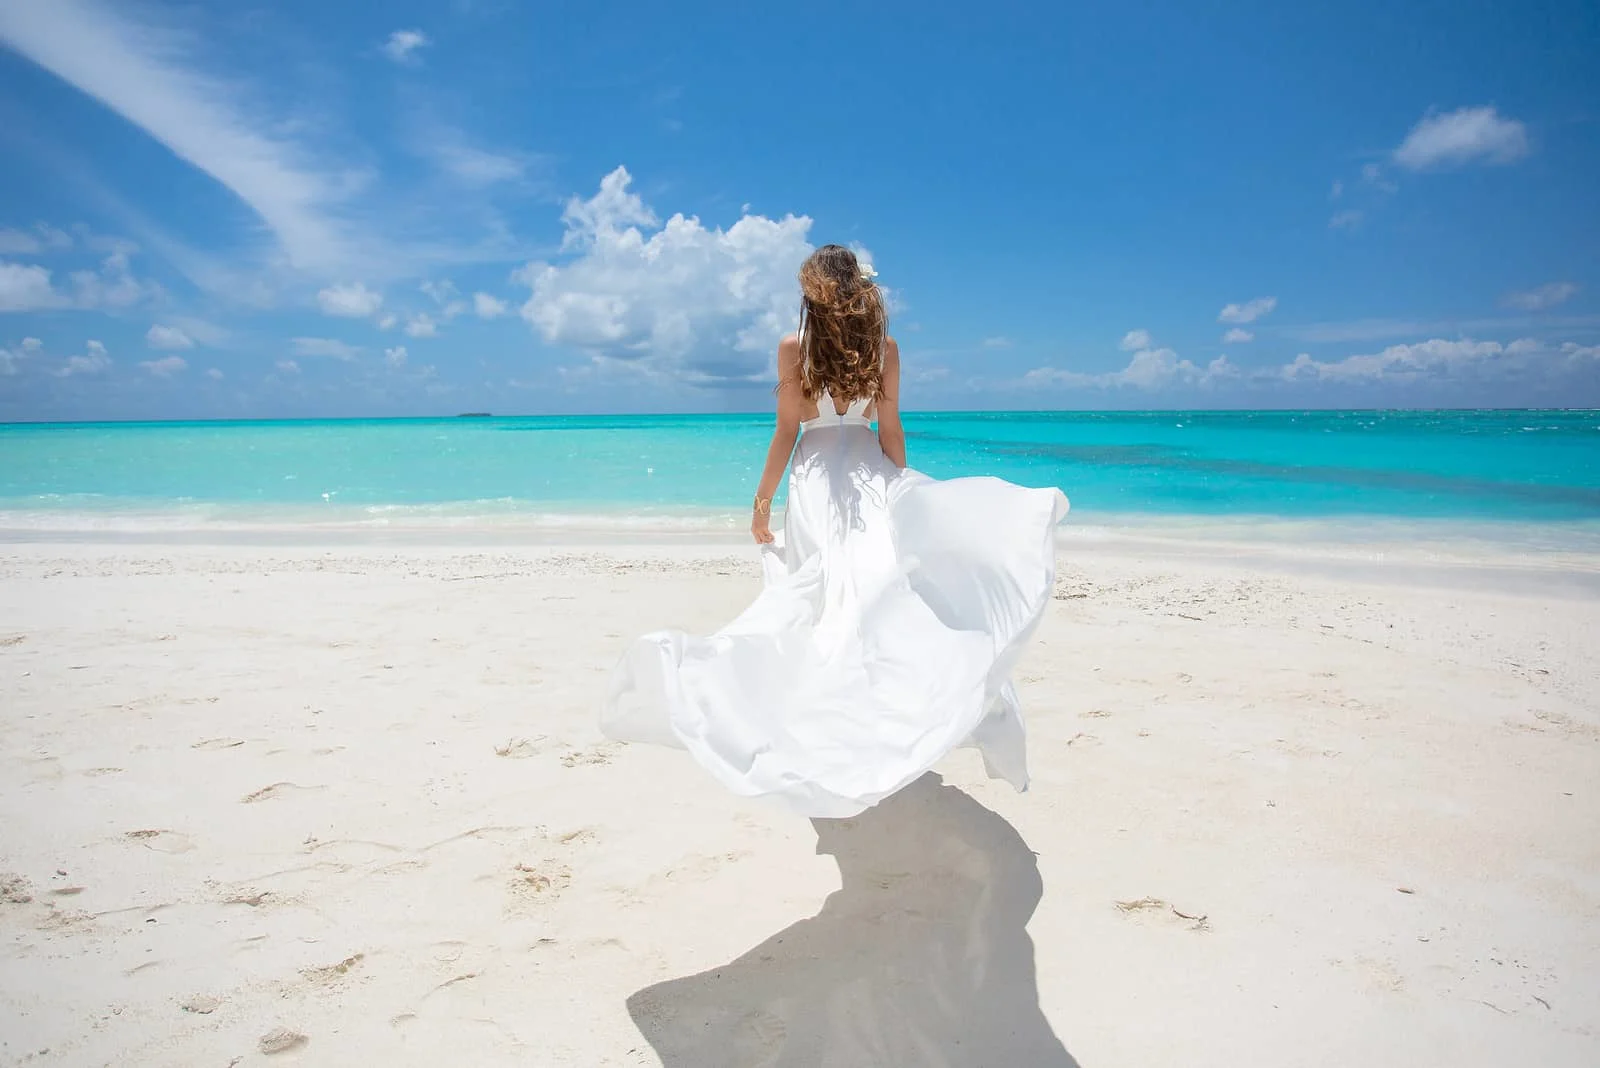 Junge Frau am Strand der tropischen Insel im weißen Kleid